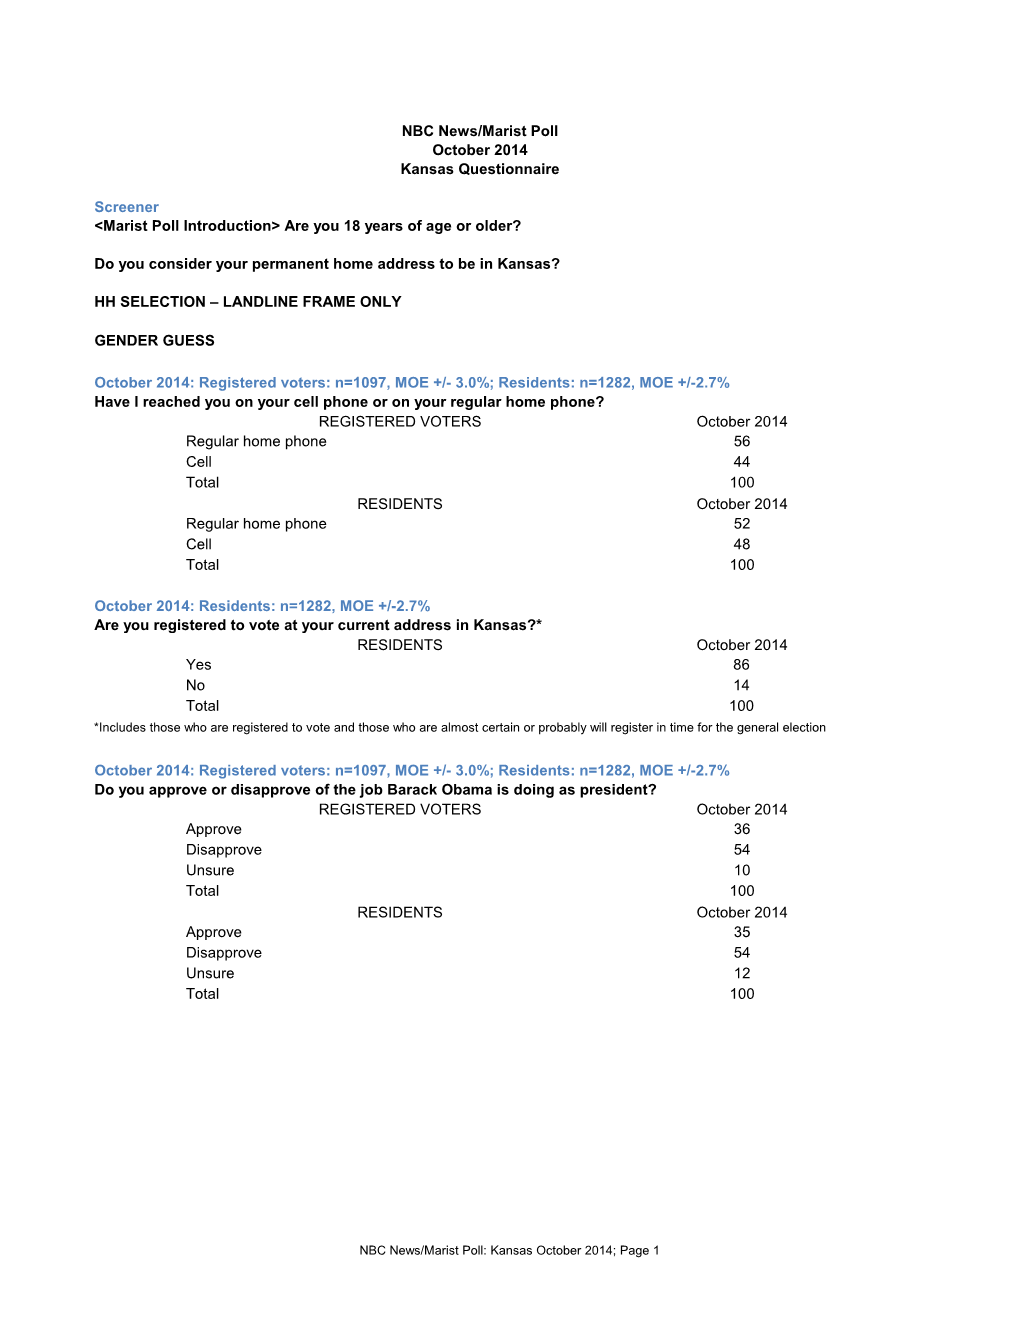 NBC News/Marist Poll October 2014 Kansas Questionnaire